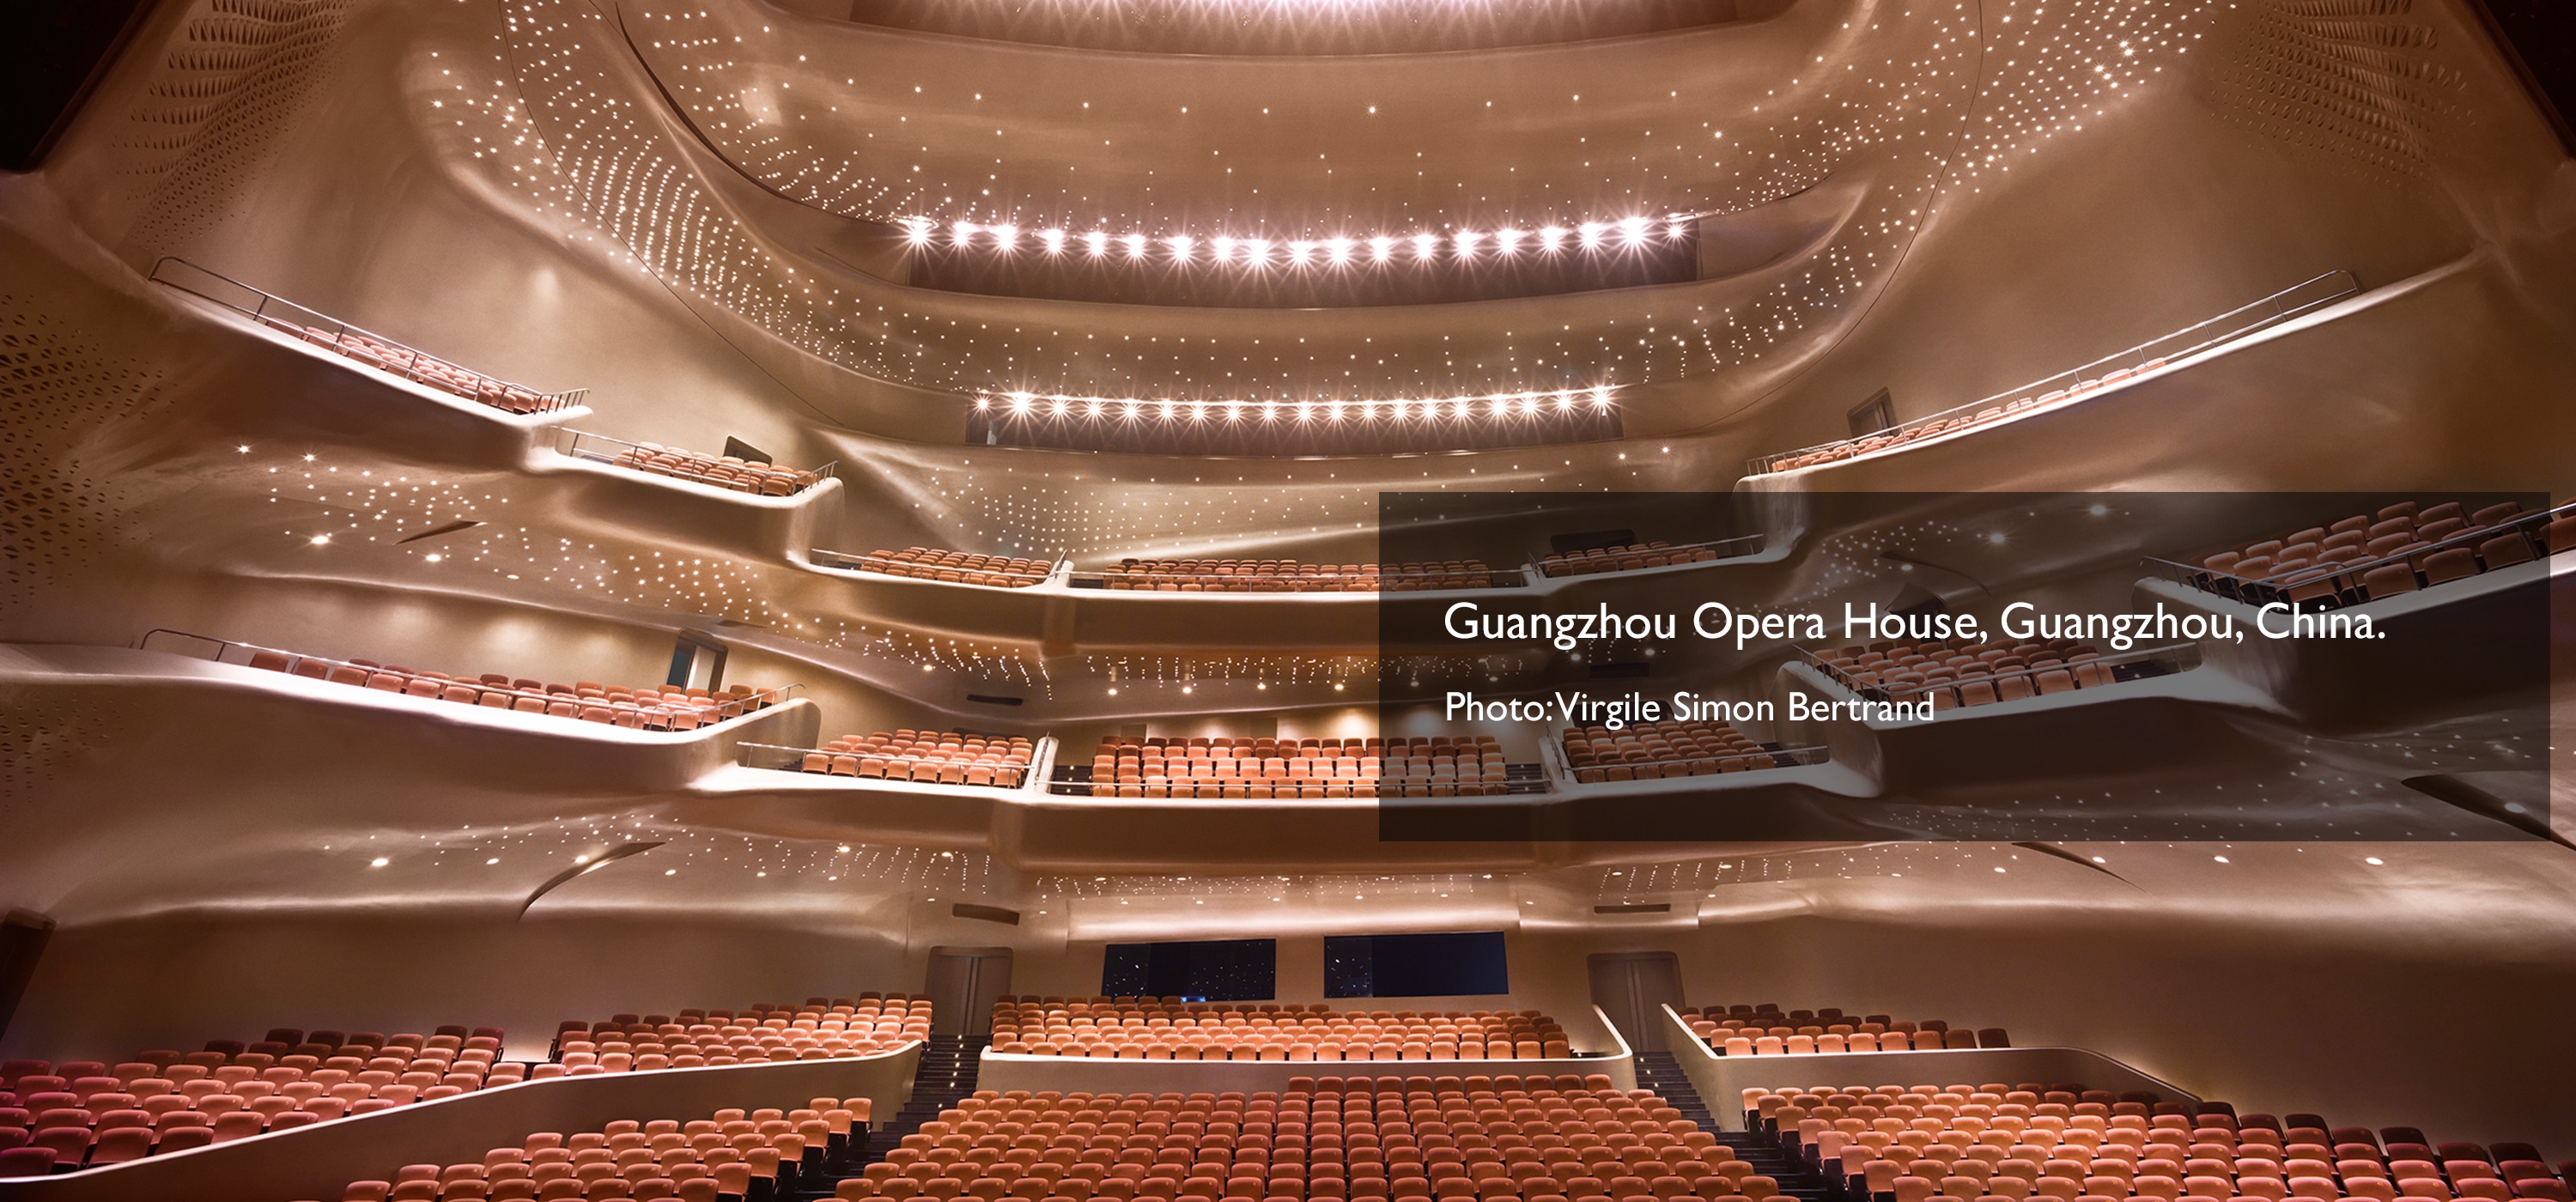 Guangzhou Opera House, Guangzhou, Tiongkok. Foto: Virgile Simon Bertrand